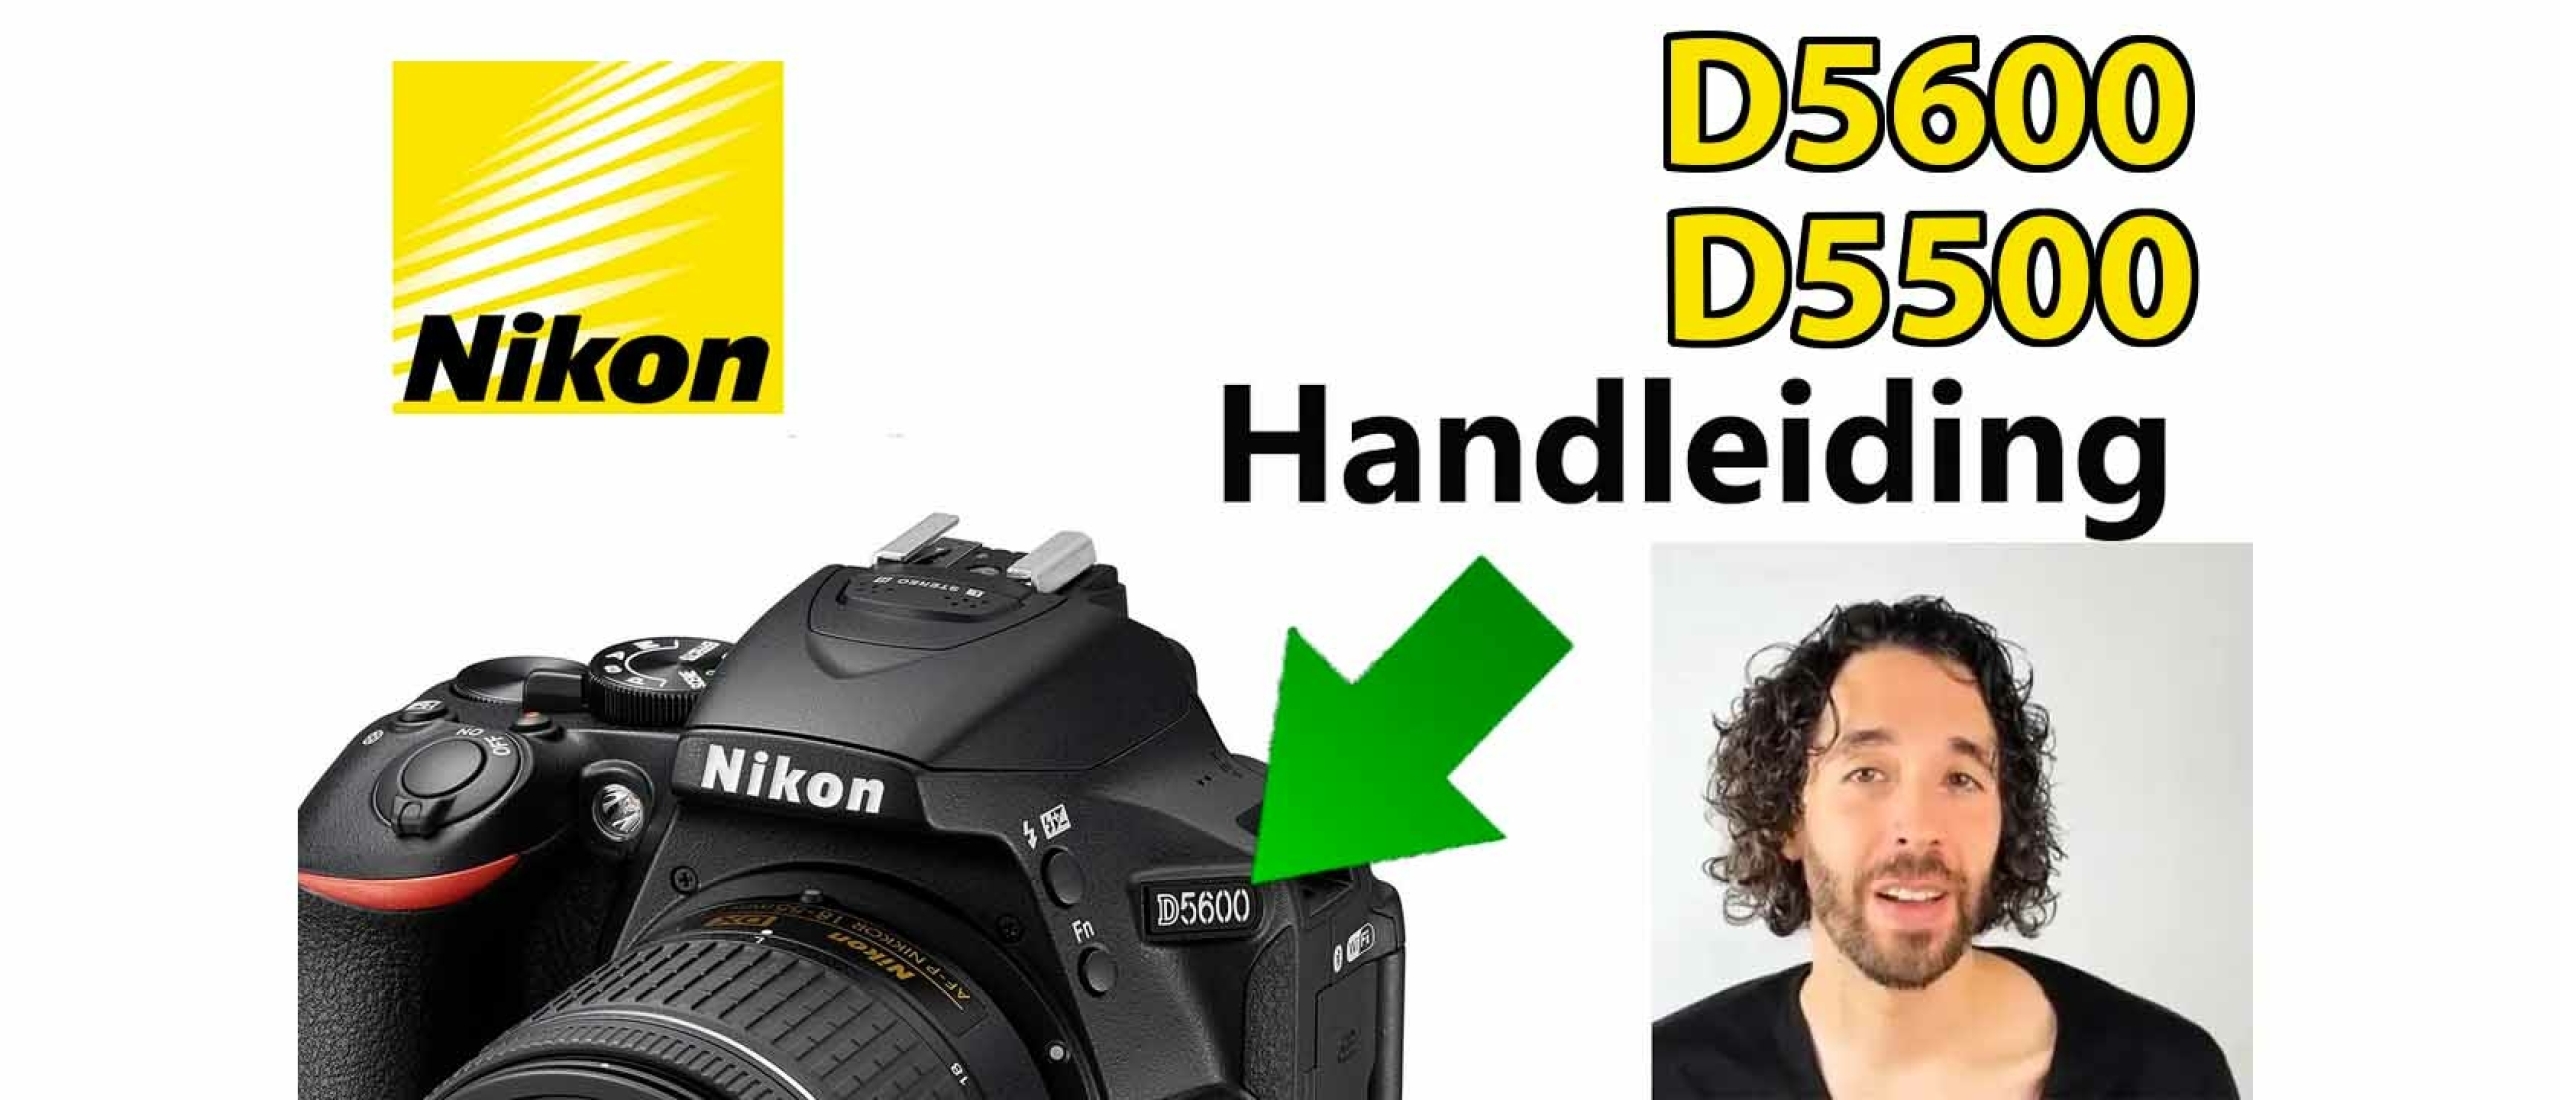 Nikon D5600 en D5500 Handleiding Video: Menu, Functies, Knoppen & Instellingen uitgelegd